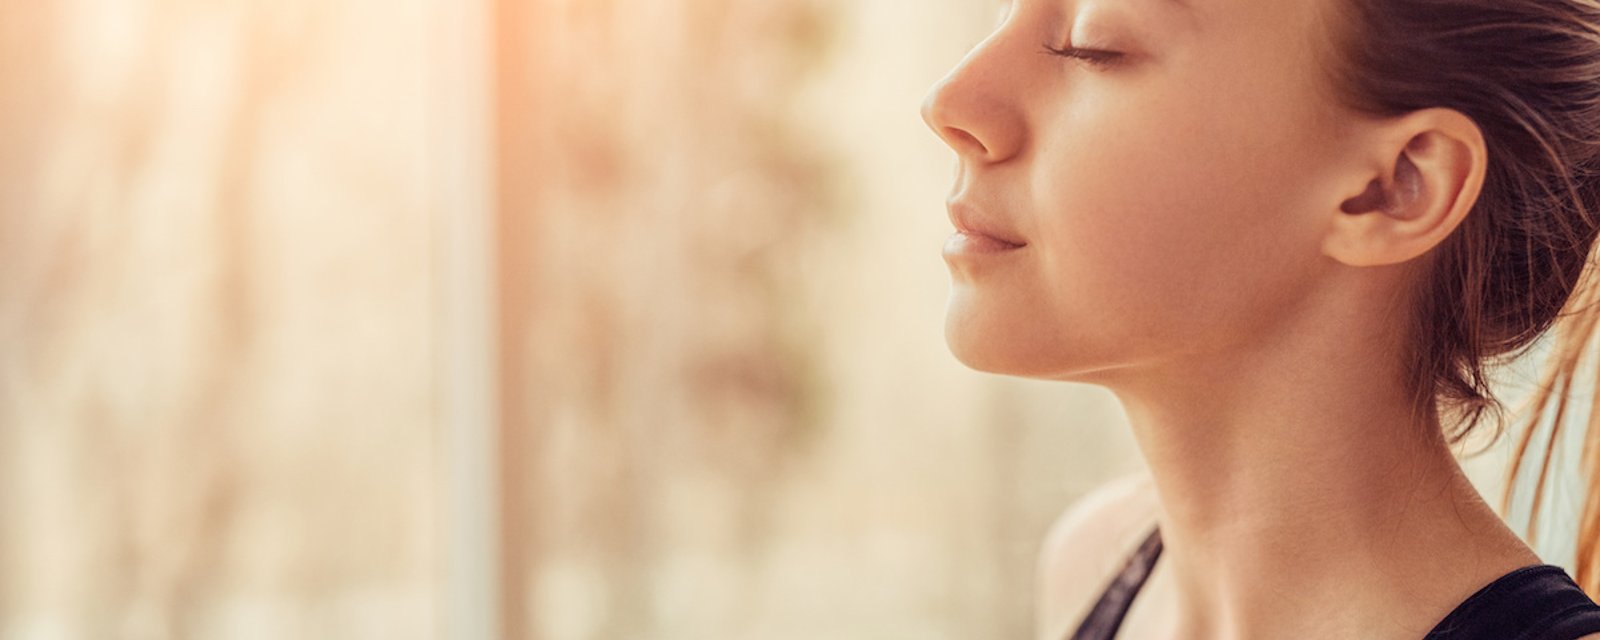 4 techniques de respiration pour réduire votre anxiété